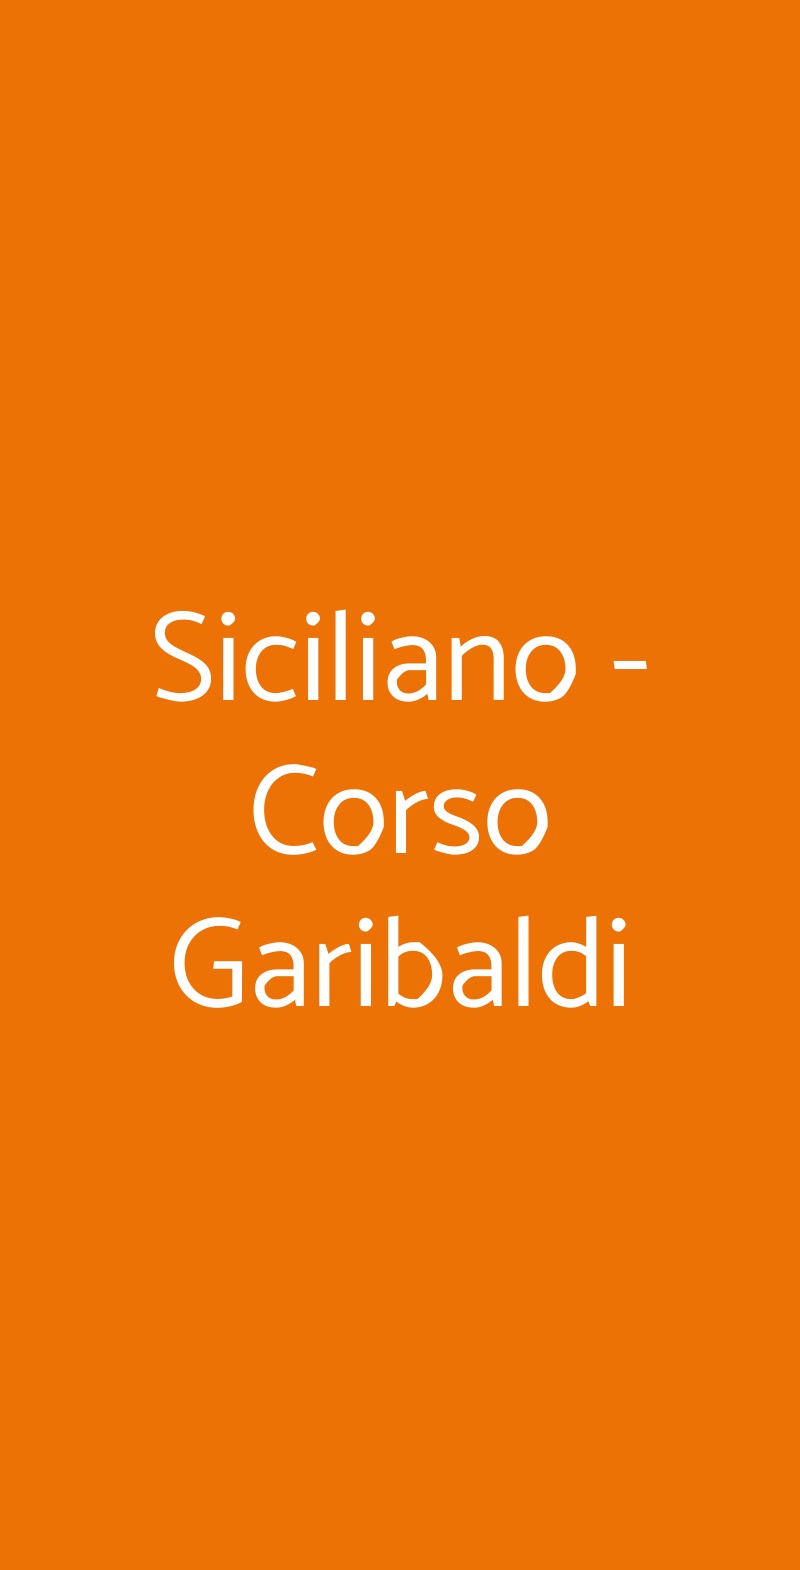 Siciliano - Corso Garibaldi Milano menù 1 pagina